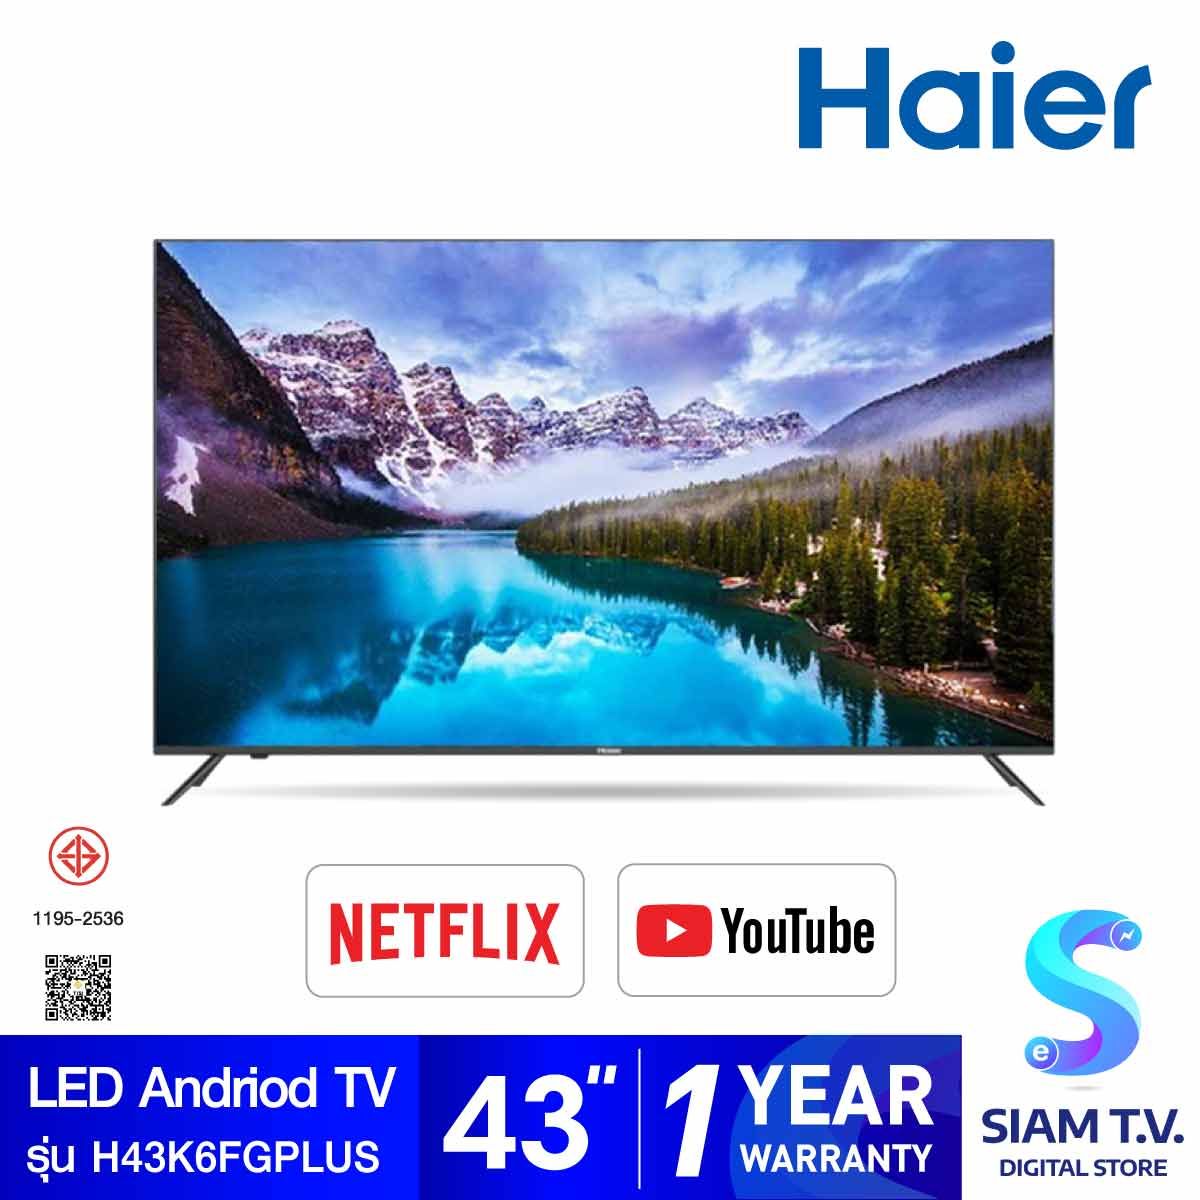 HAIER ANDROID TV FHD รุ่น H43K6FGPLUS สมาร์ททีวีขนาด 43 นิ้ว